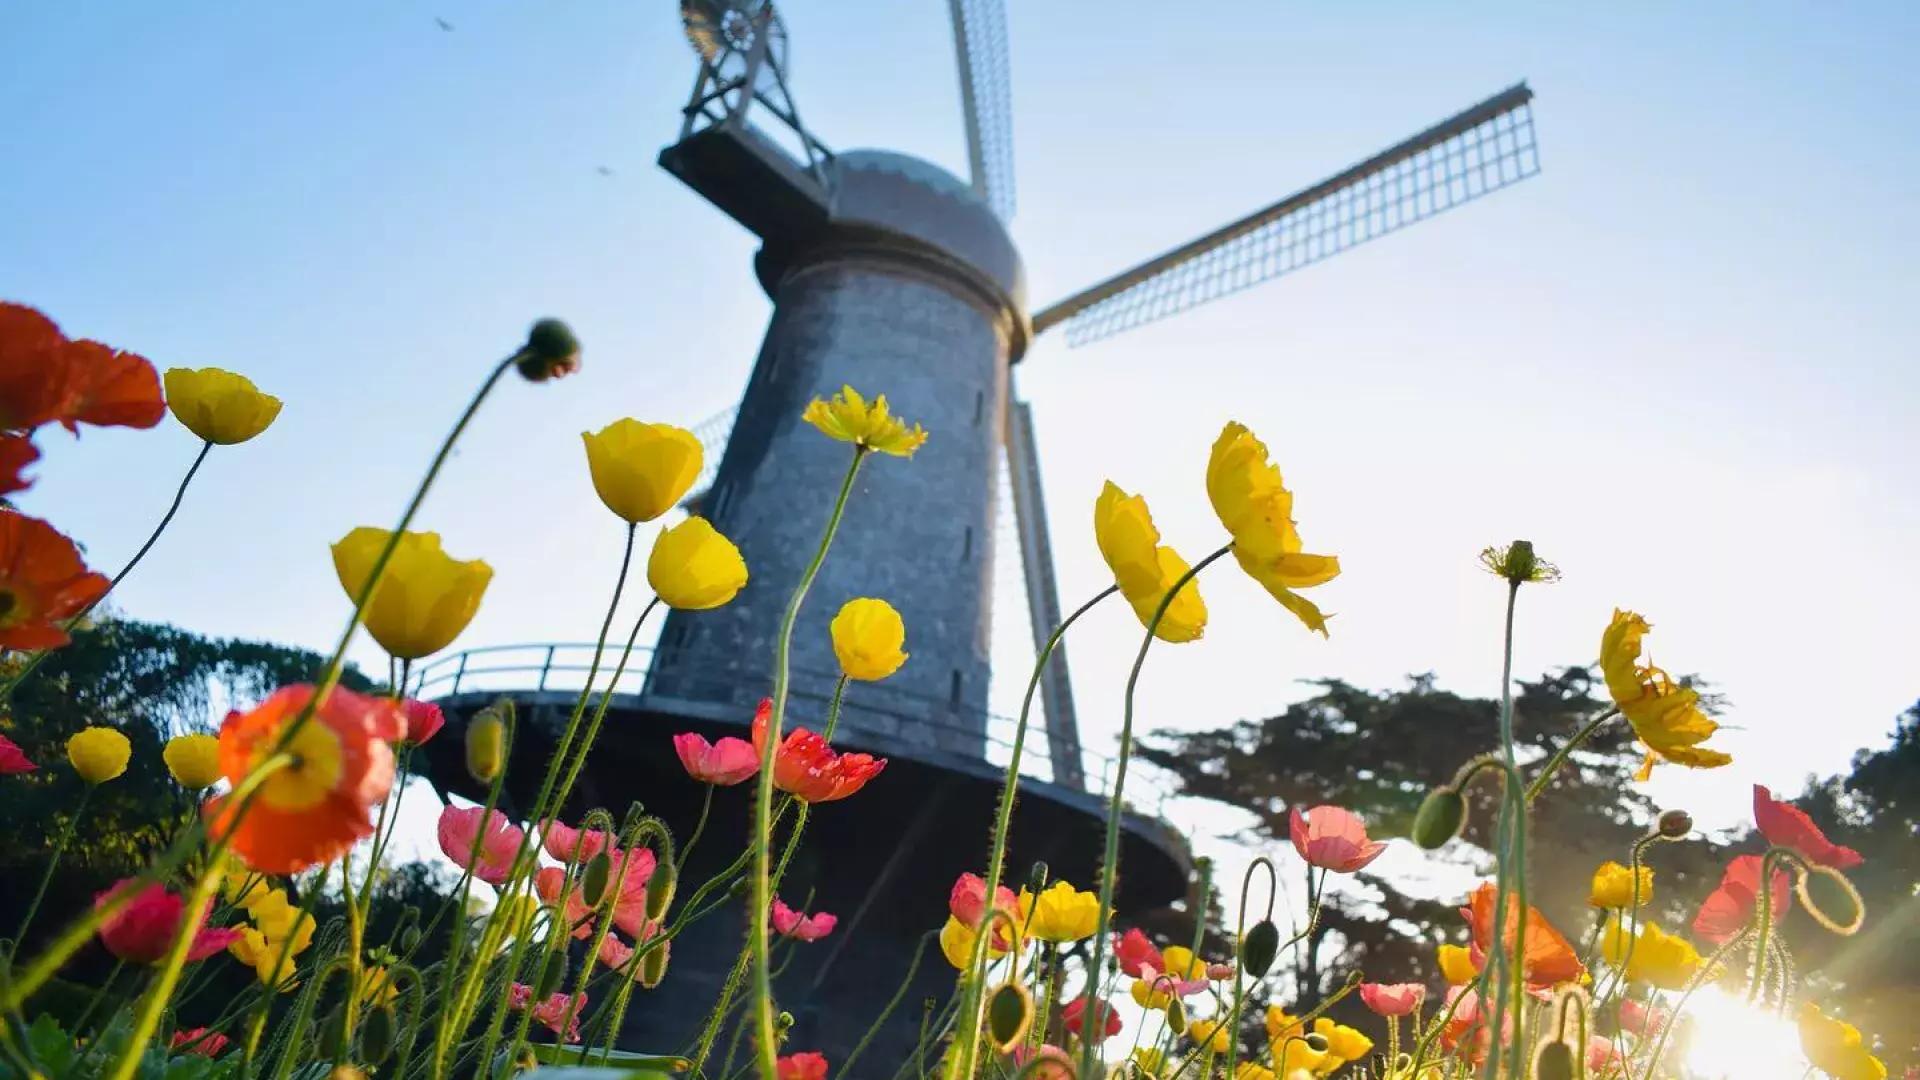 Les tulipes fleurissent sous l'un des célèbres moulins à vent du Golden Gate Park.